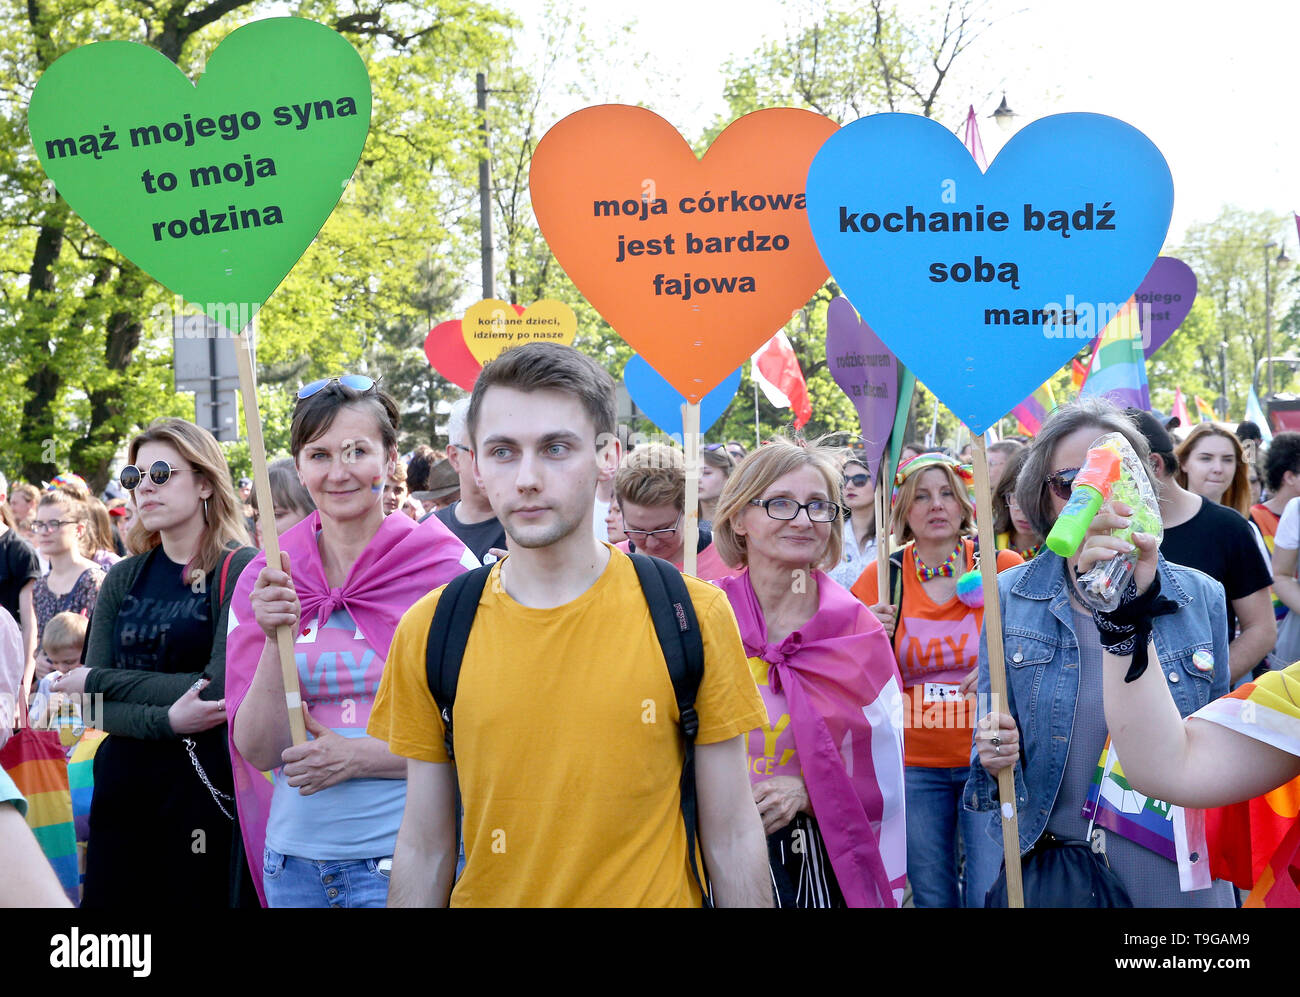 Menschen mit Rainbow Flags sind während der Gleichstellung März in Krakau gesehen. LGBT-Menschen und ihre Unterstützer zu Fuß durch die Straßen von Krakau Vielfalt und Toleranz zu feiern und sich gegen Diskriminierung und Ausgrenzung. Der März war in der Innenstadt von LGBT-Demonstranten aus der rechten Organisationen erfüllt. Stockfoto